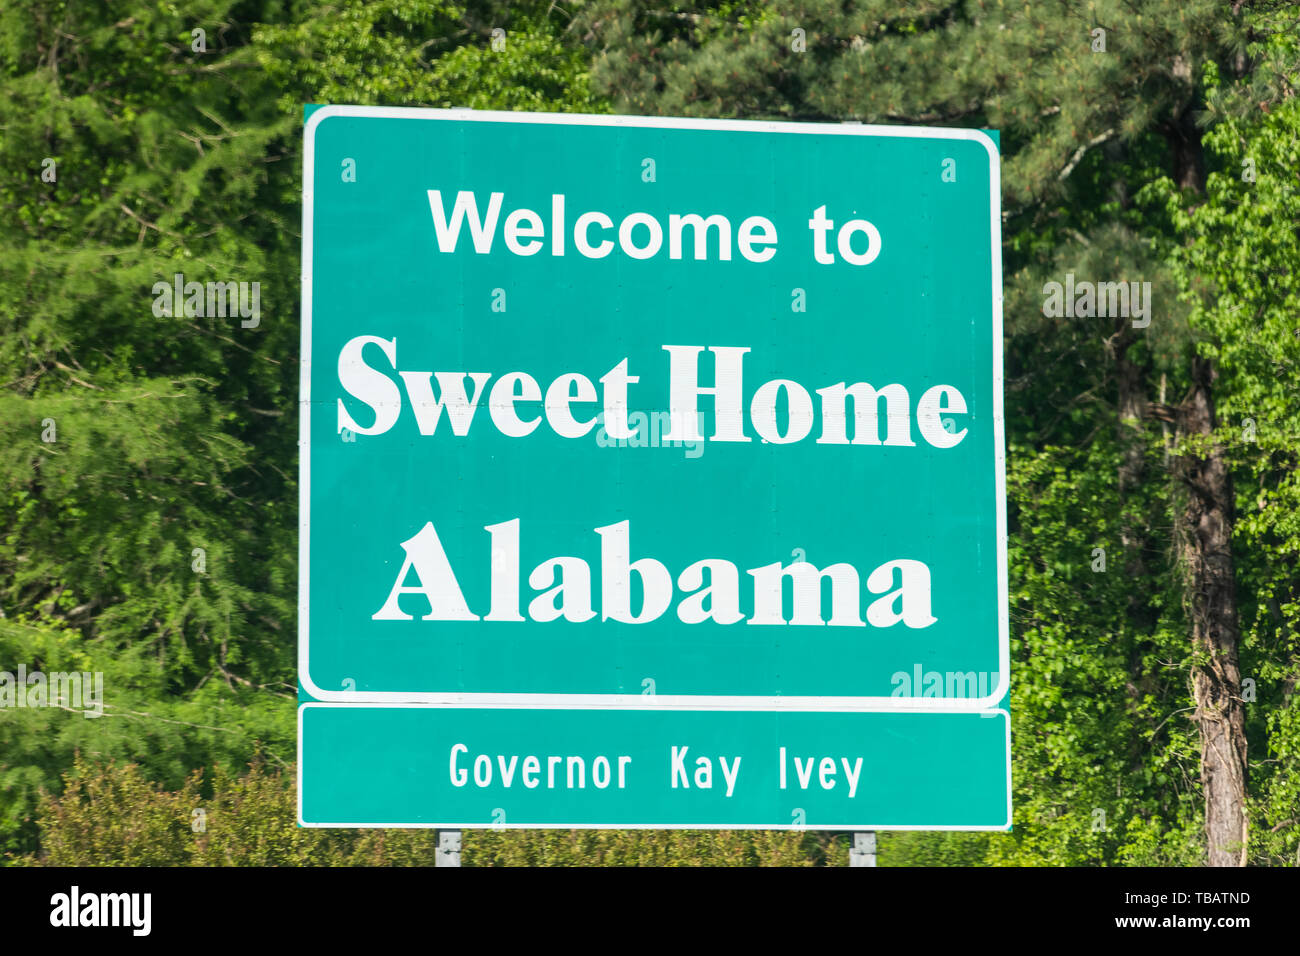 Atlanta, États-Unis - 21 Avril 2018 : la route de l'autoroute de l'Alabama avec panneau de bienvenue et texte sur rue avec personne et sweet home texte avec Gouverneur Kay Ivey Banque D'Images